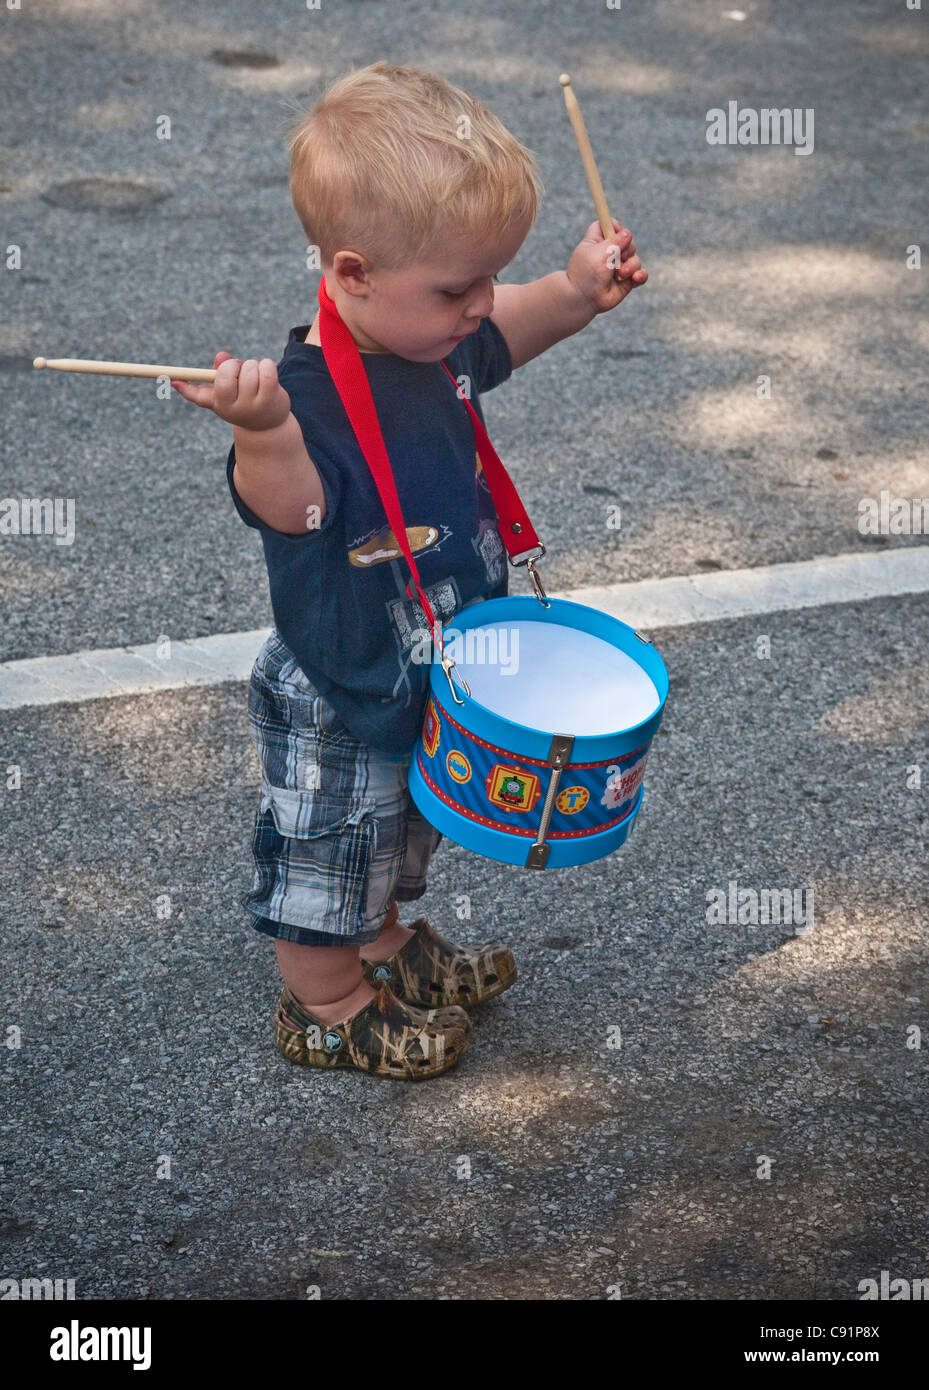 Petite ville, de banlieue, célébrations patriotiques holiday parade. Petit garçon jouet avec tambour. Banque D'Images